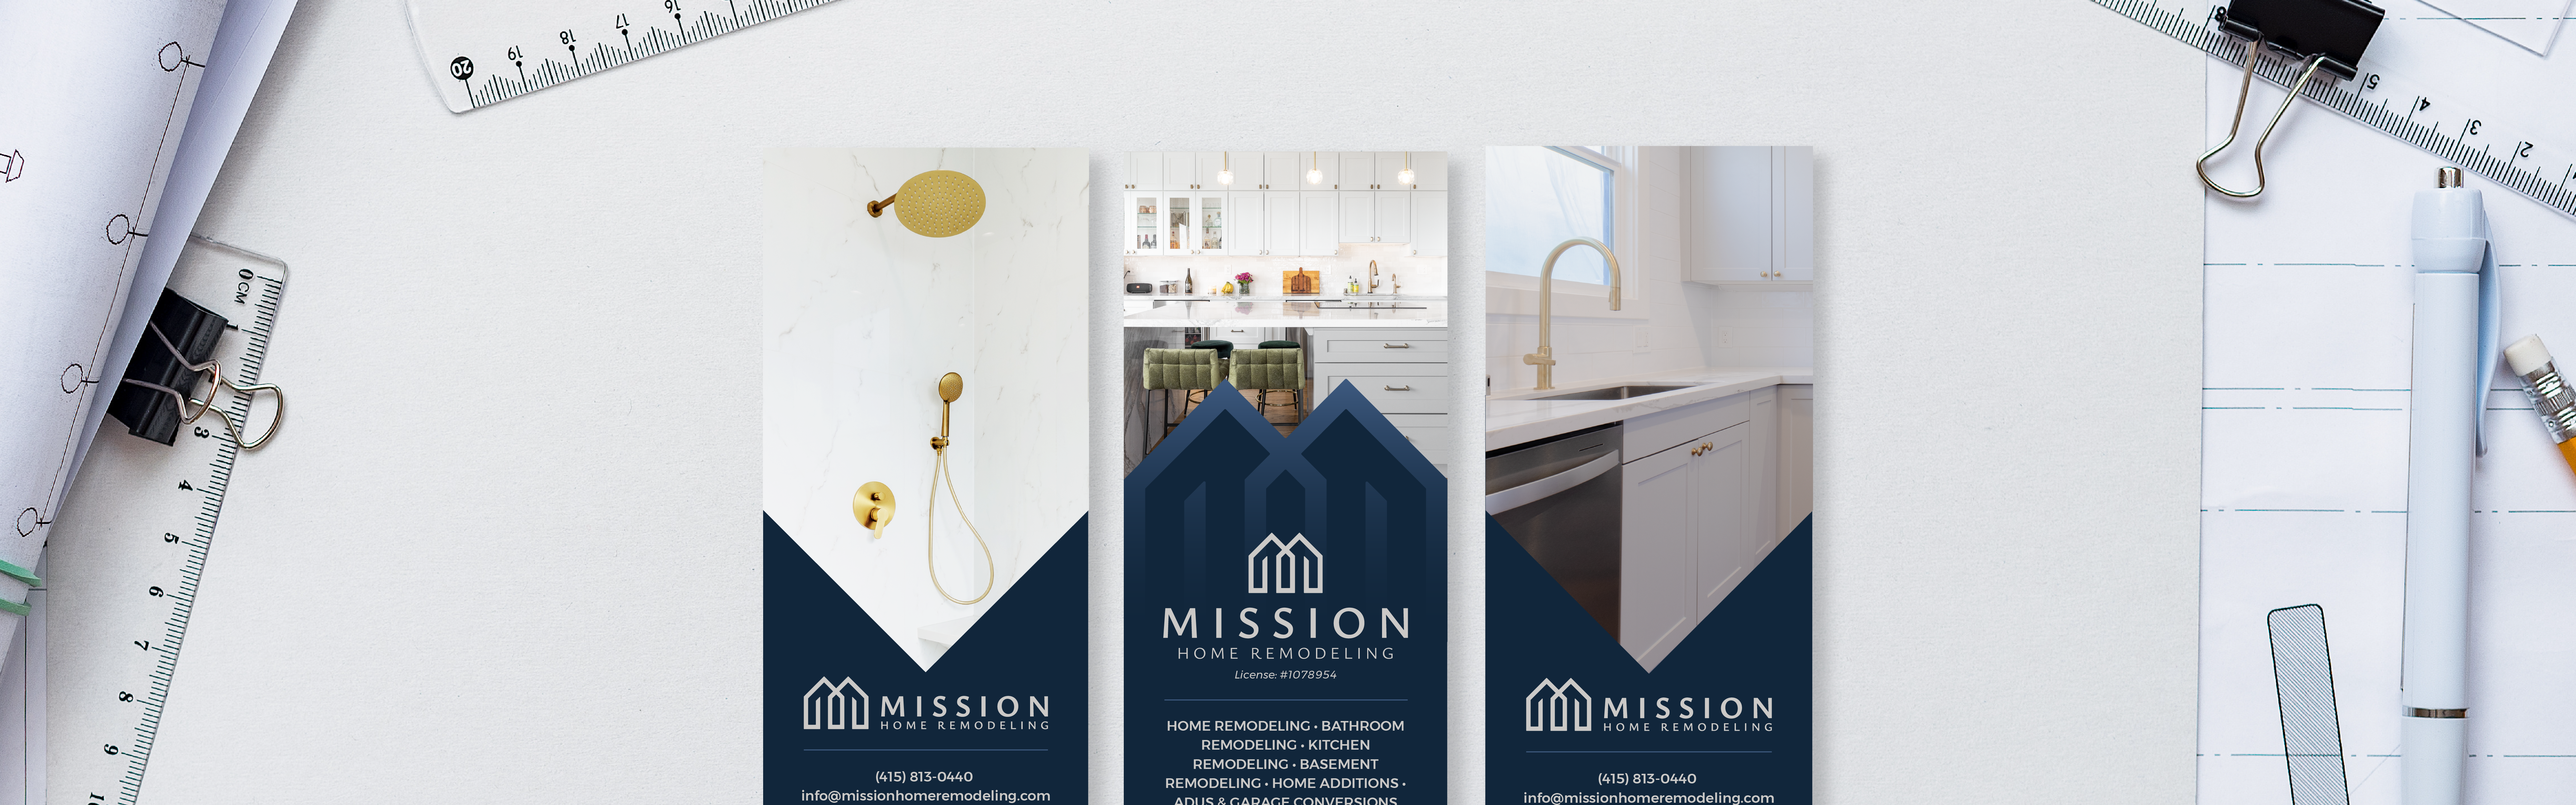 Mission Home Remodeling marketing design